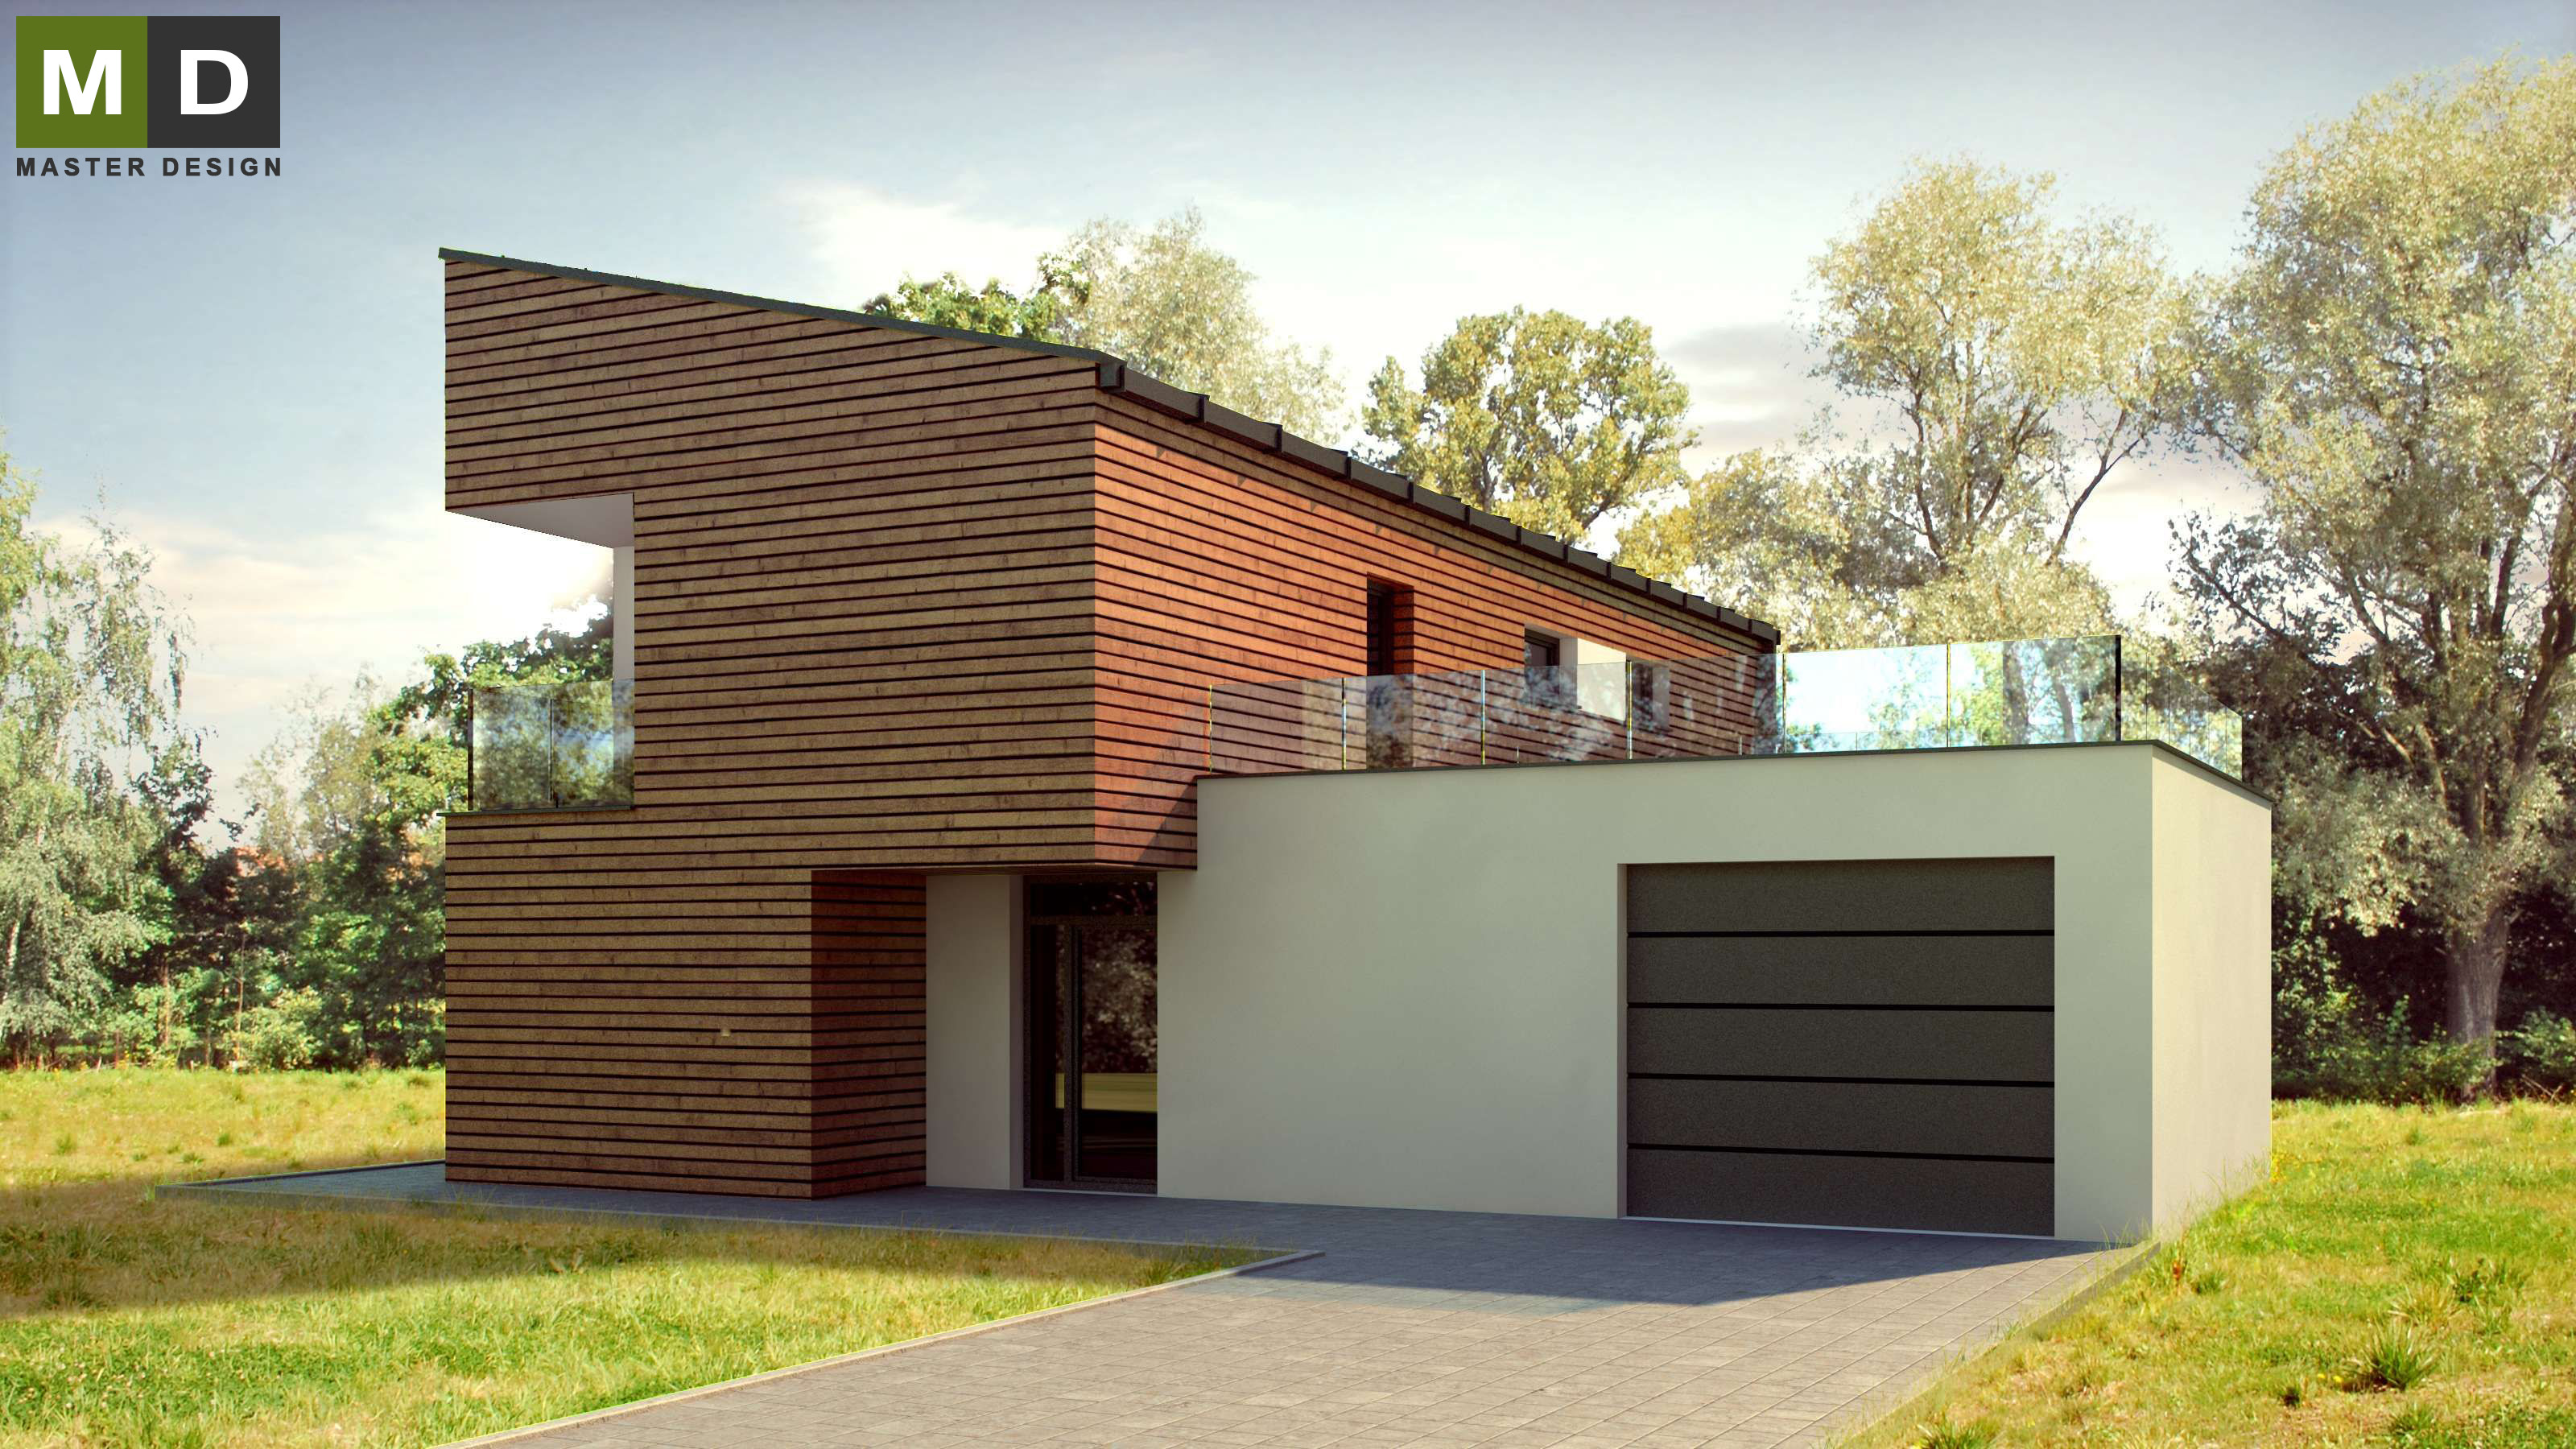 Vizualizace 1 - Pasivní dům s pultovou střechou a dřevěným obkladem - Developerský projekt do Švýcarska